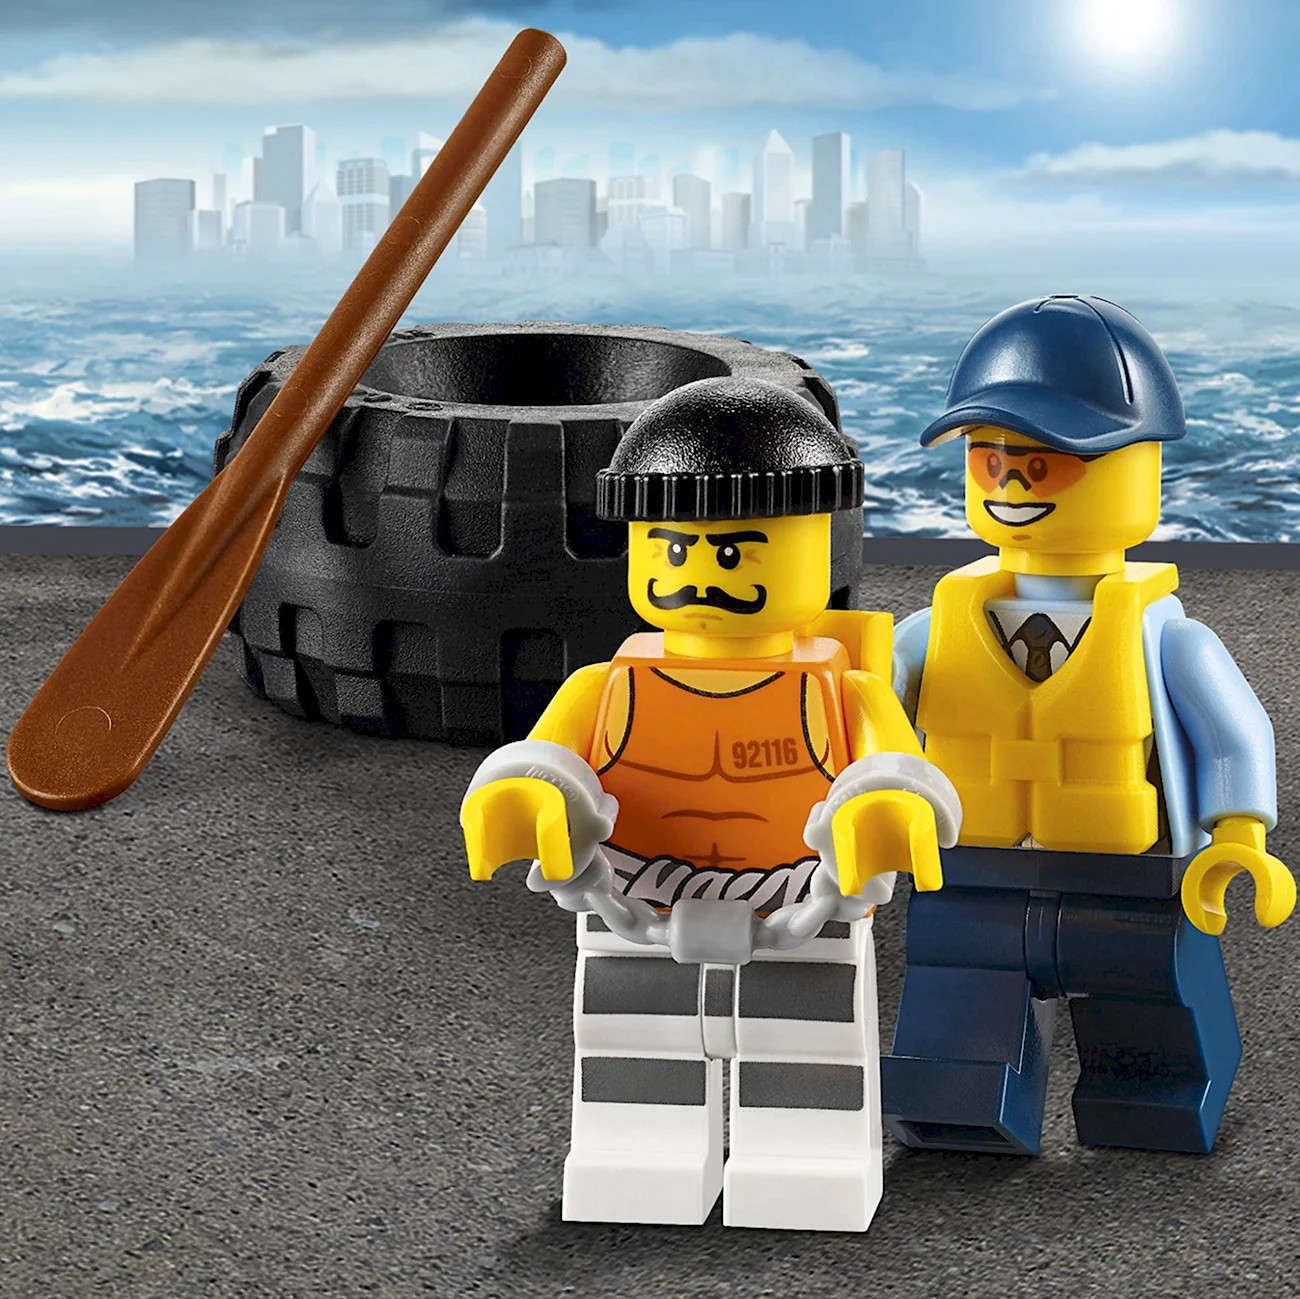 LEGO City 60126. Картинка из мультфильма